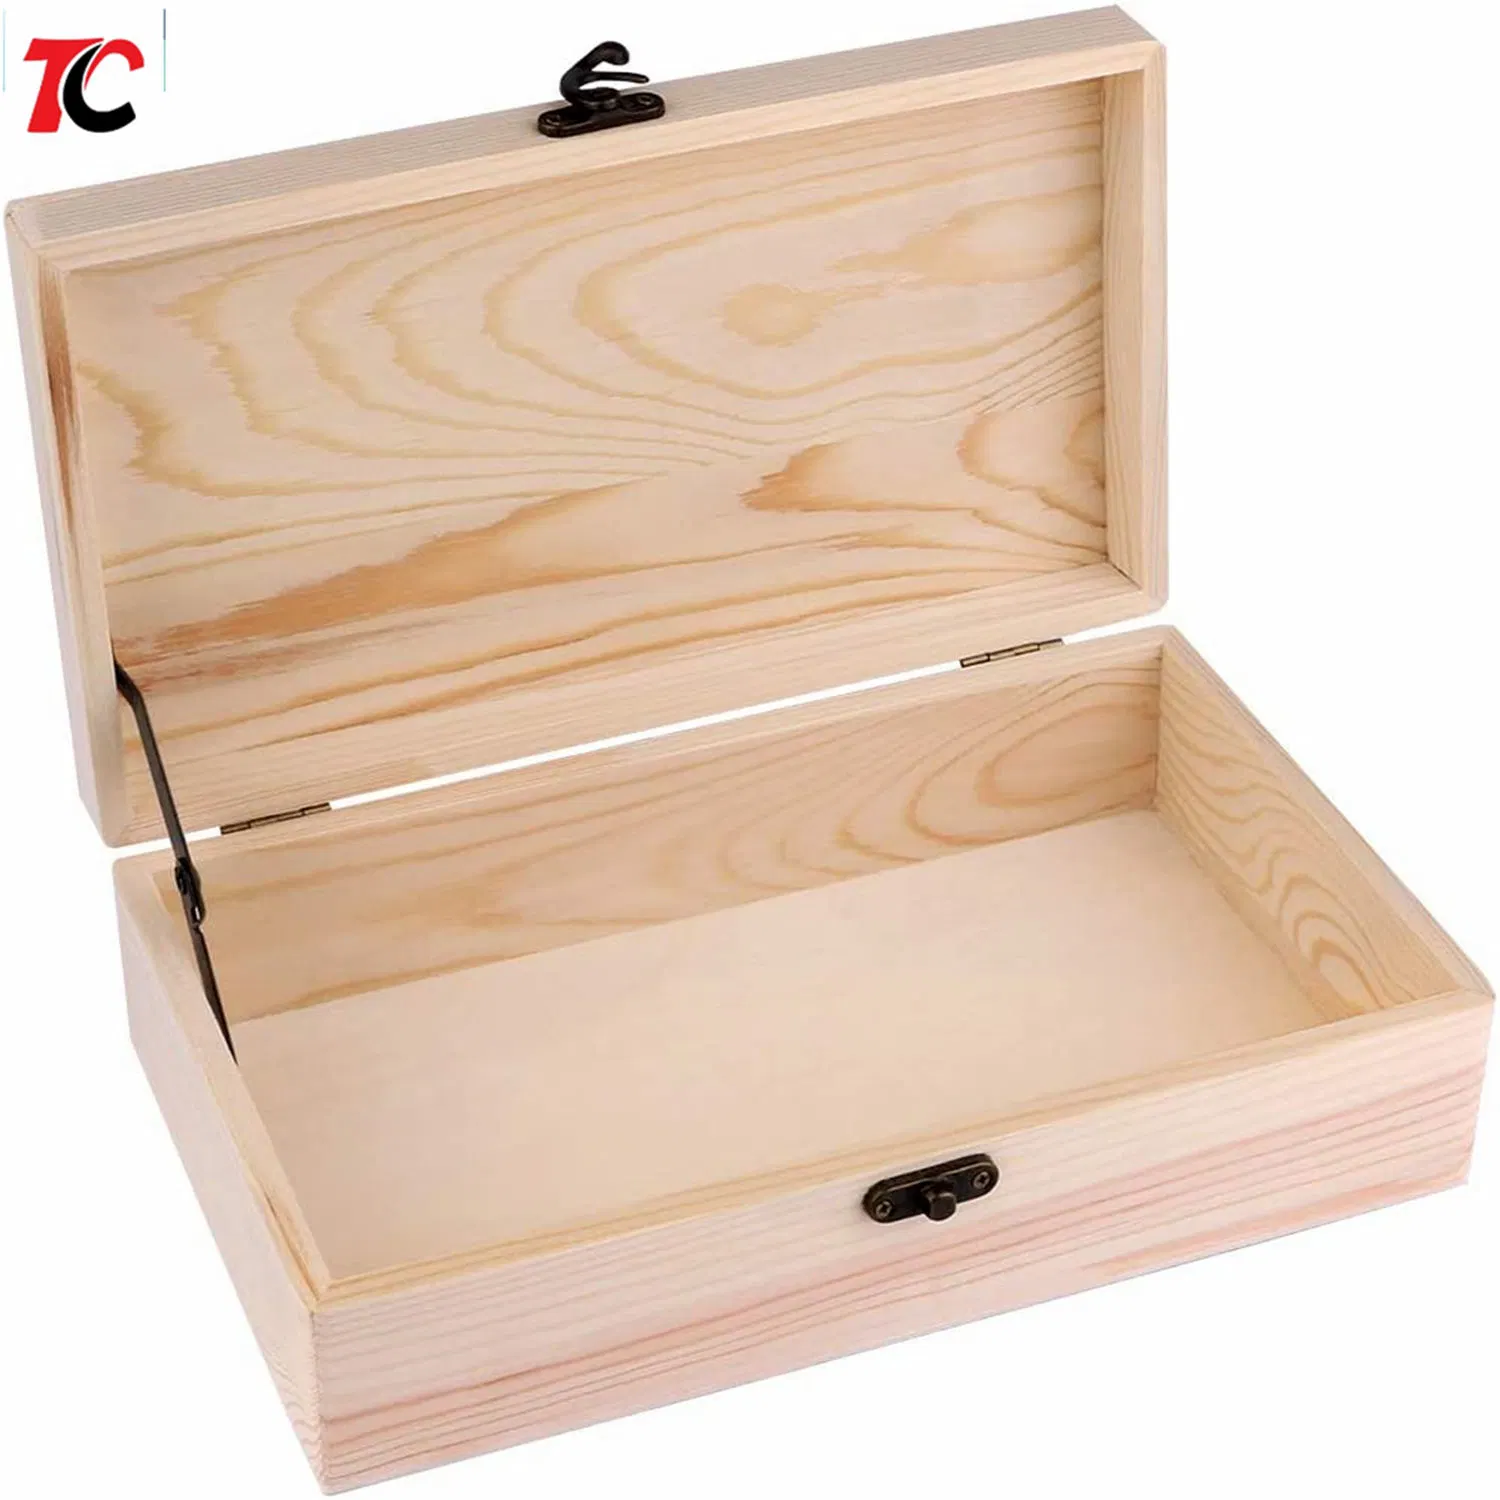 Caixa de Madeira inacabada com caixa de madeira de fecho de caixa de arrumação em madeira caixas de oferta em madeira para trabalhos de bricolage